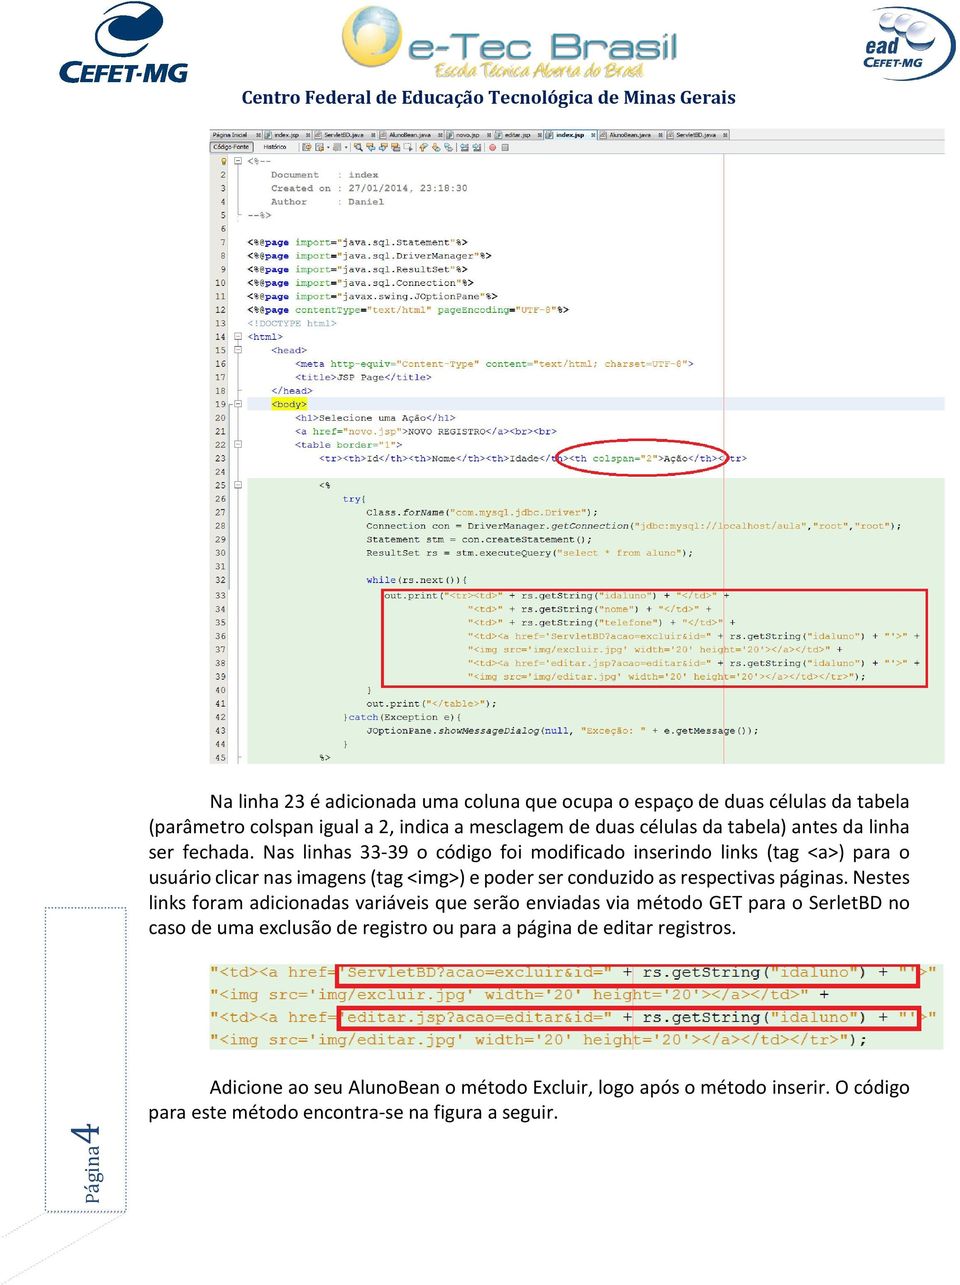 Nas linhas 33-39 o código foi modificado inserindo links (tag <a>) para o usuário clicar nas imagens (tag <img>) e poder ser conduzido as respectivas páginas.